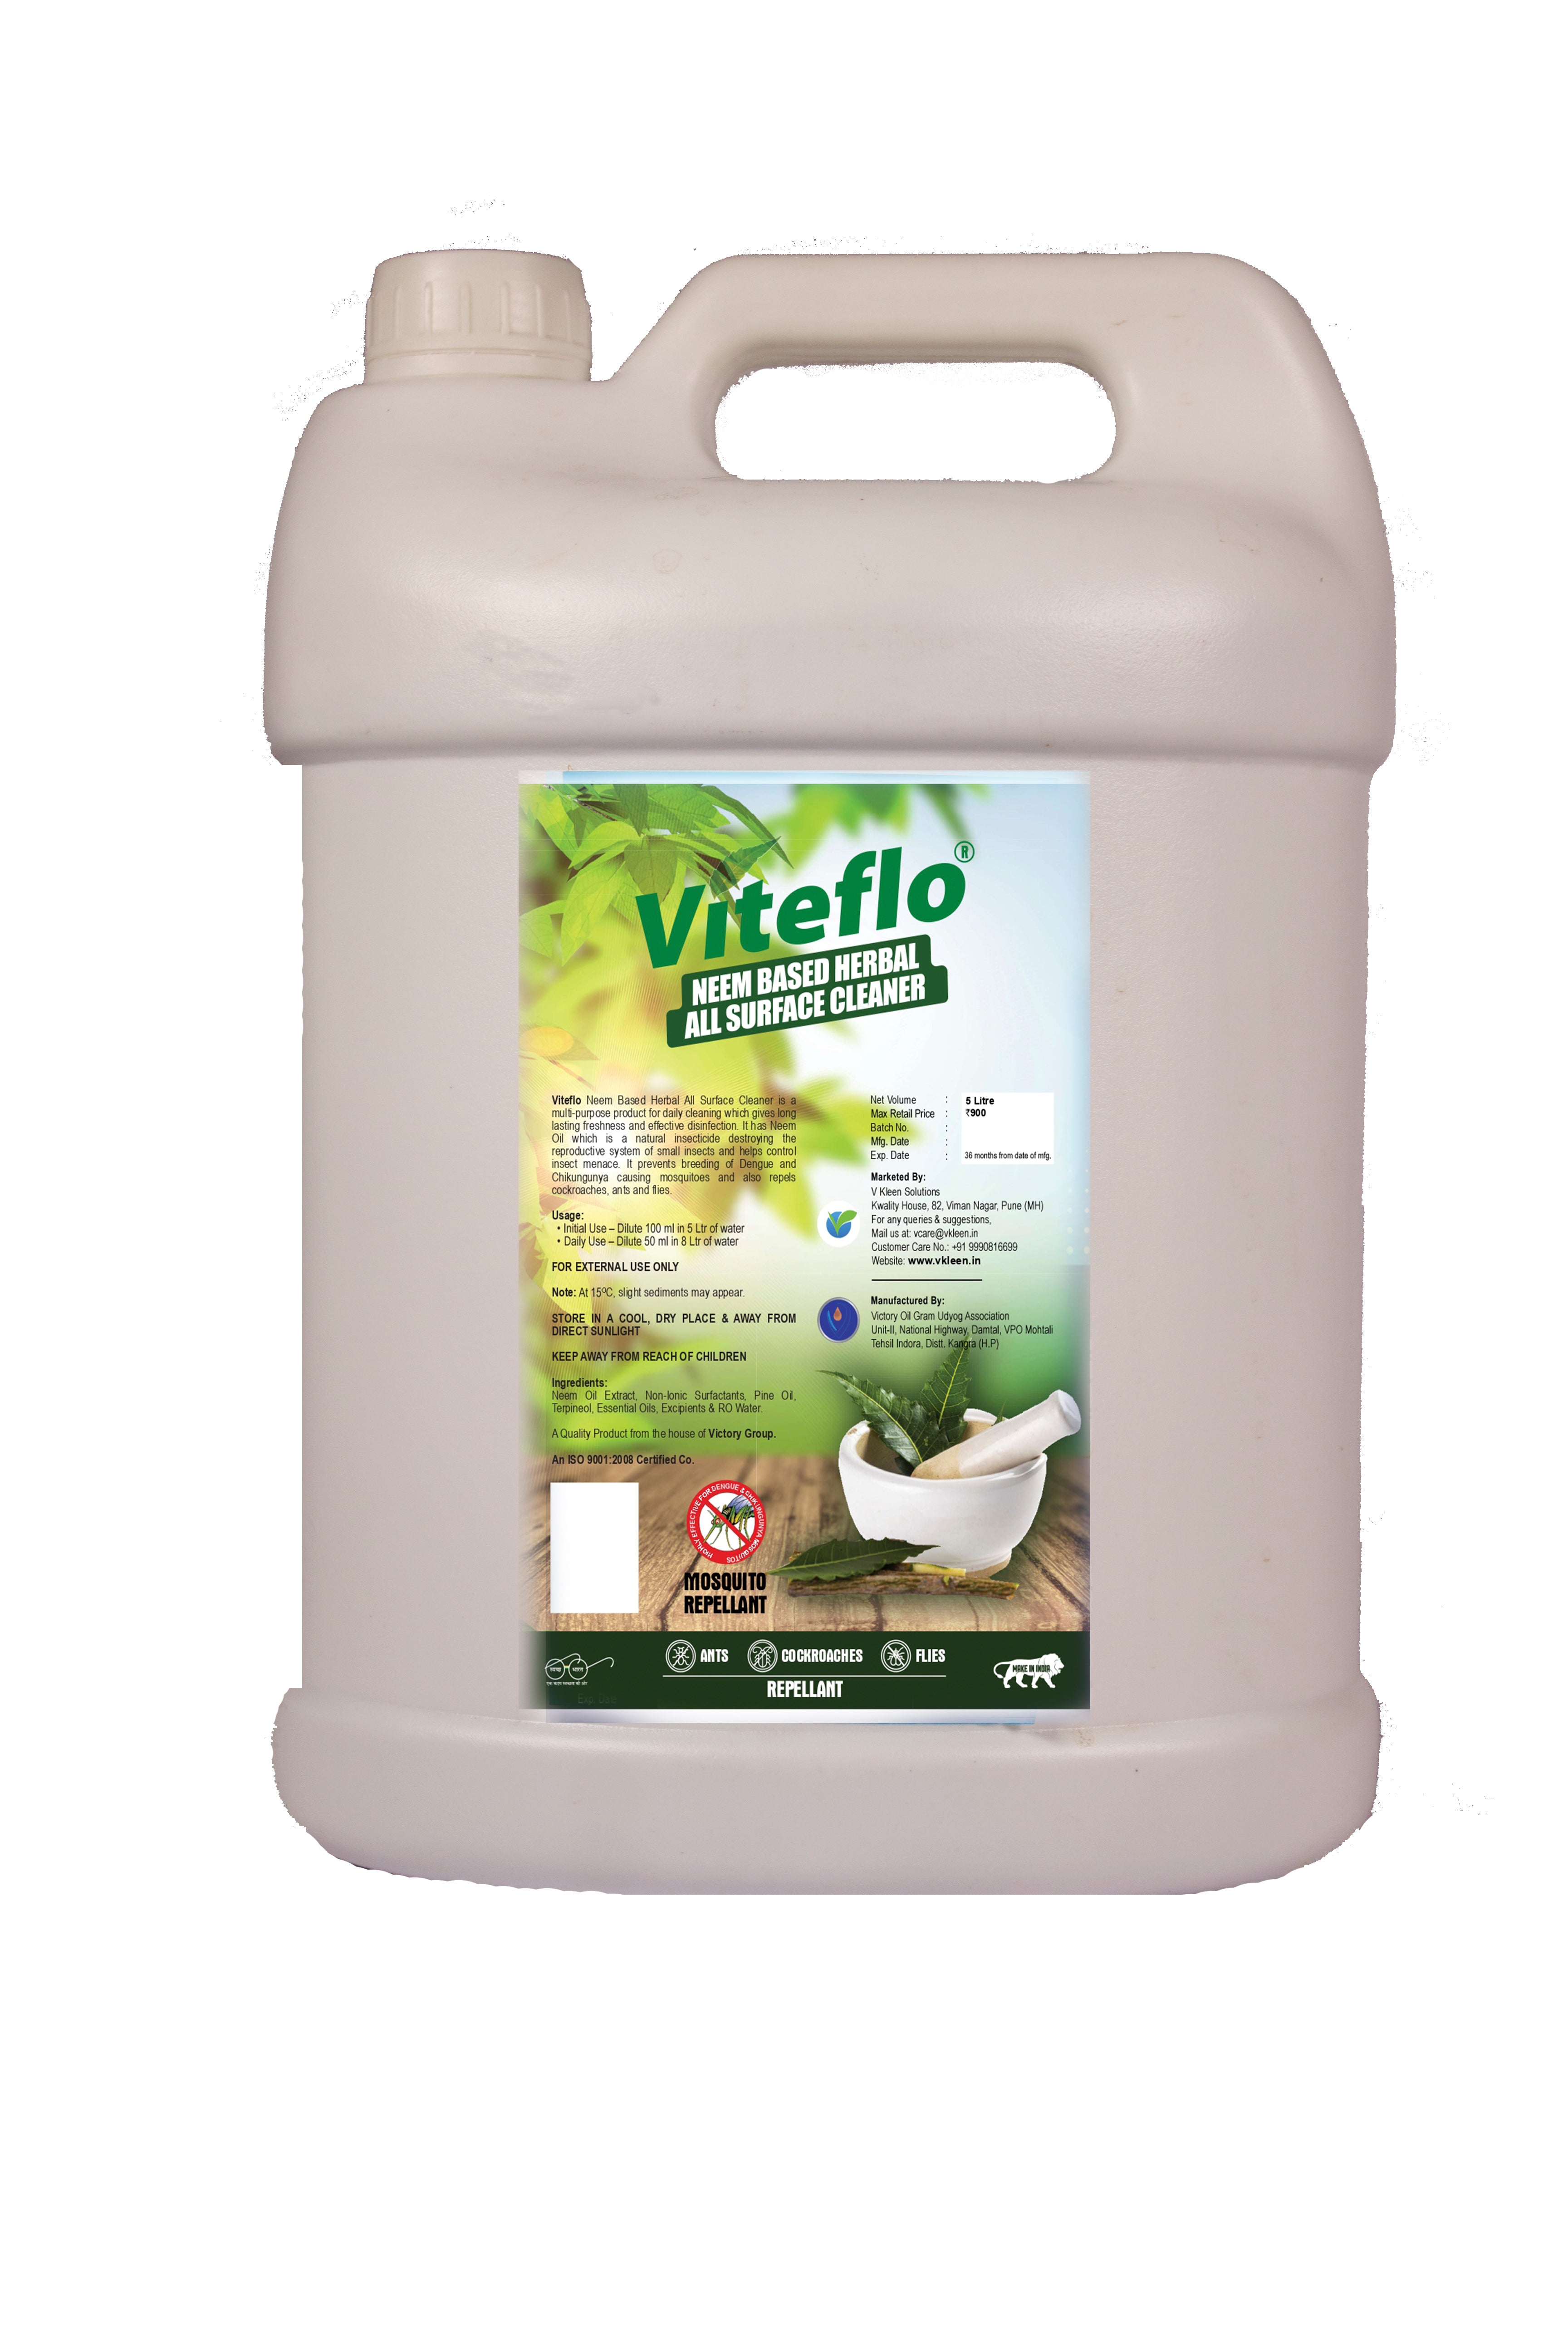 Viteflo neem based surface cleaner